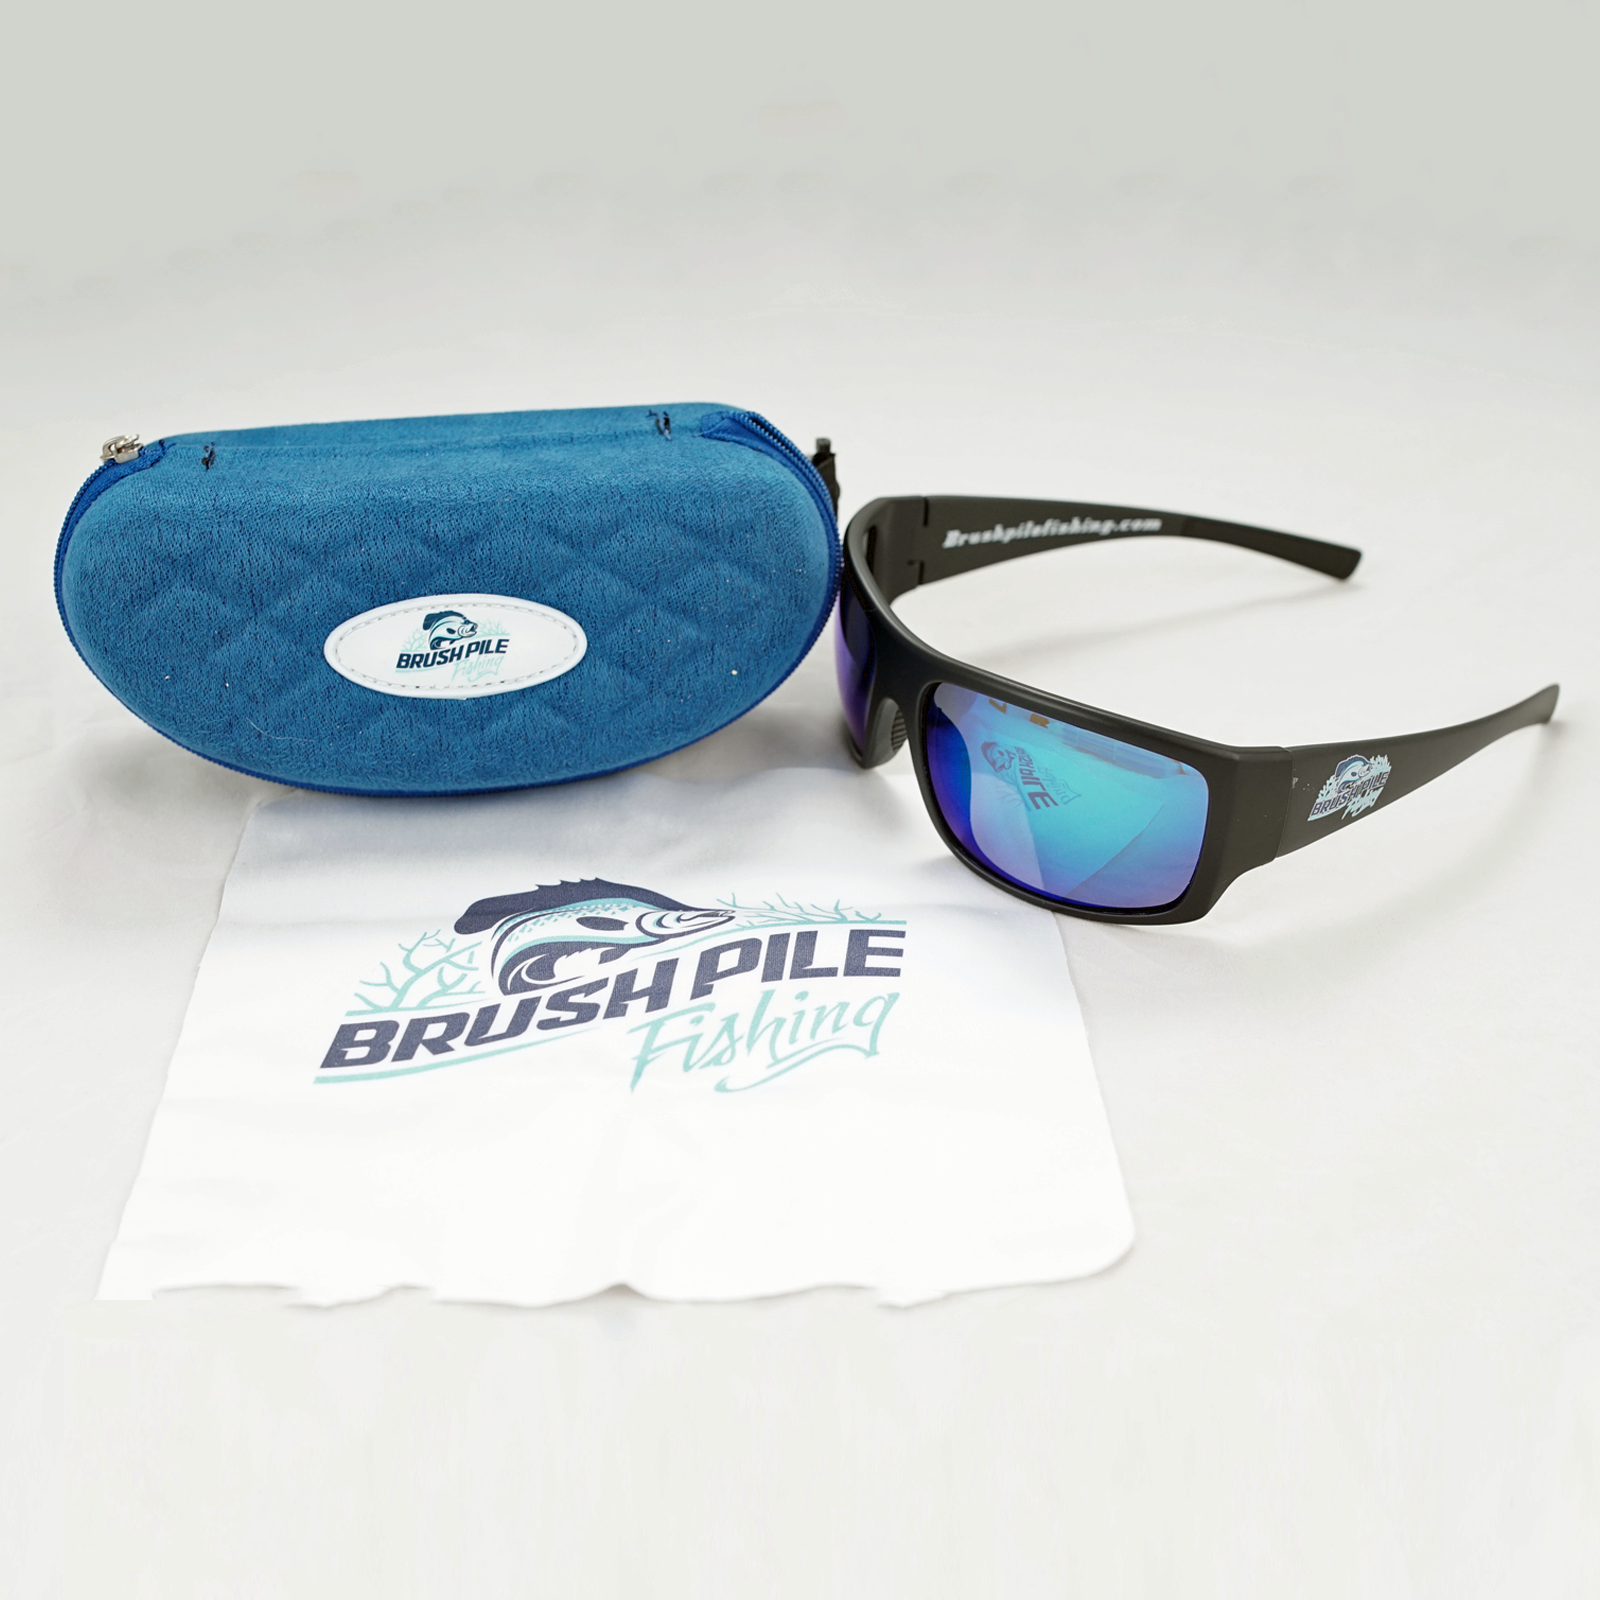 Sunglasses and Case with BrushPile Fishing Logo • BrushPile Fishing